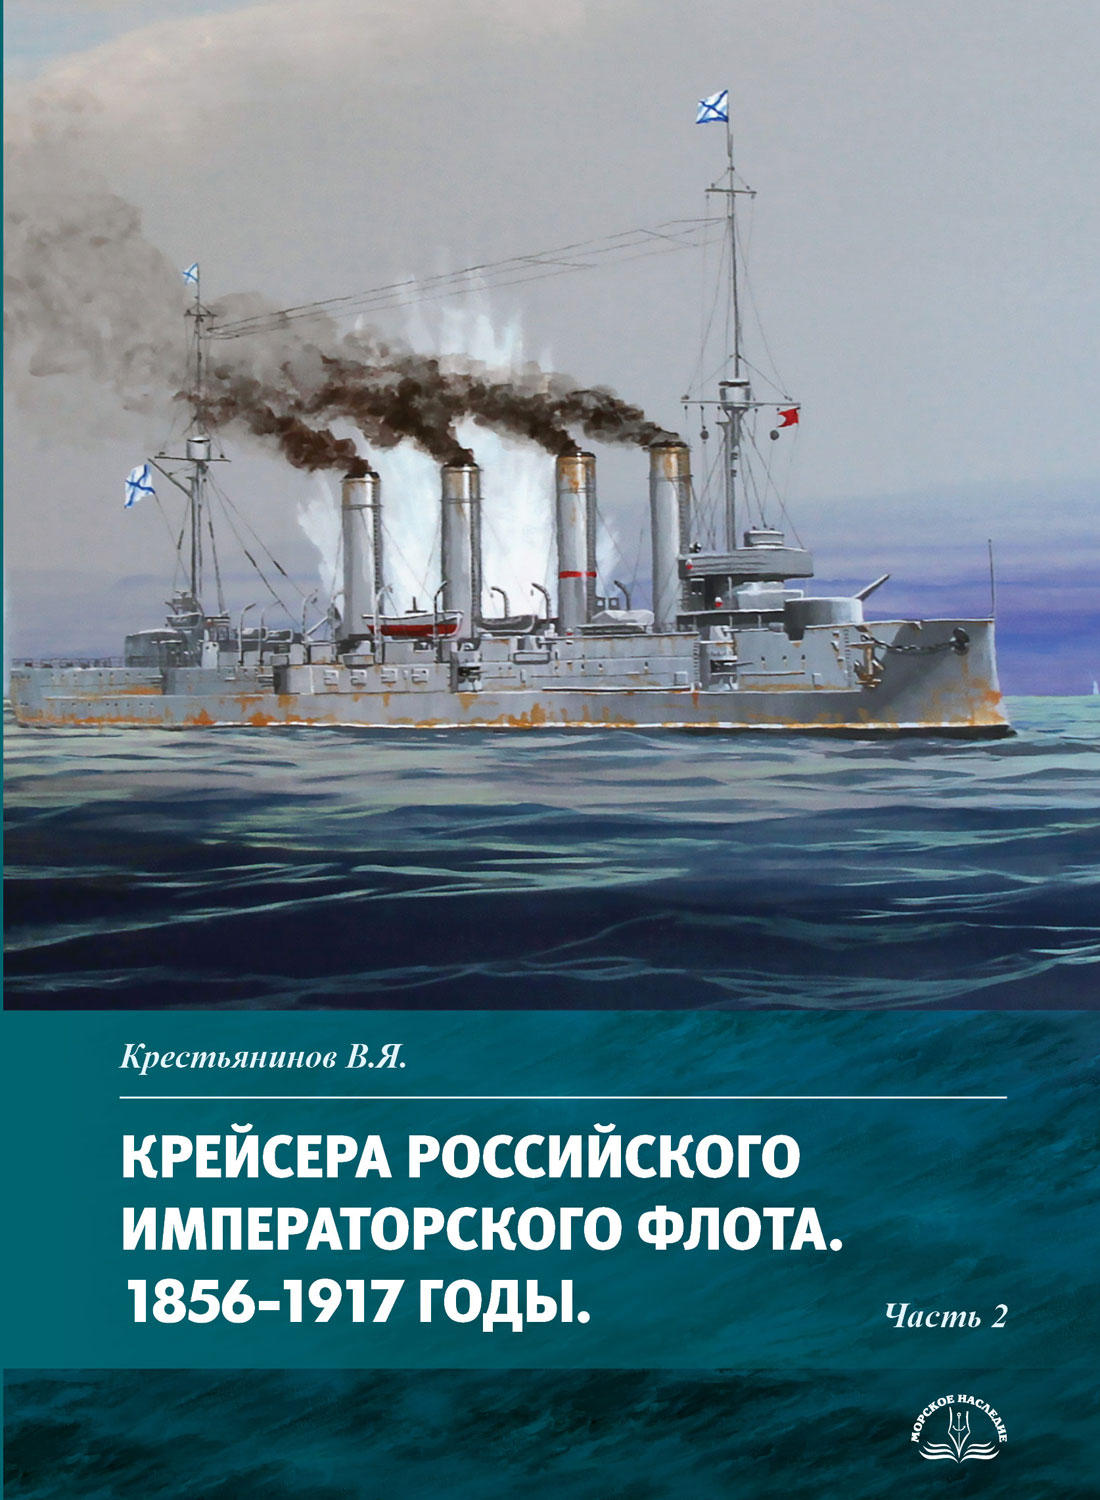 Крейсера Российского императорского флота. 1856-1917 годы. Часть 2